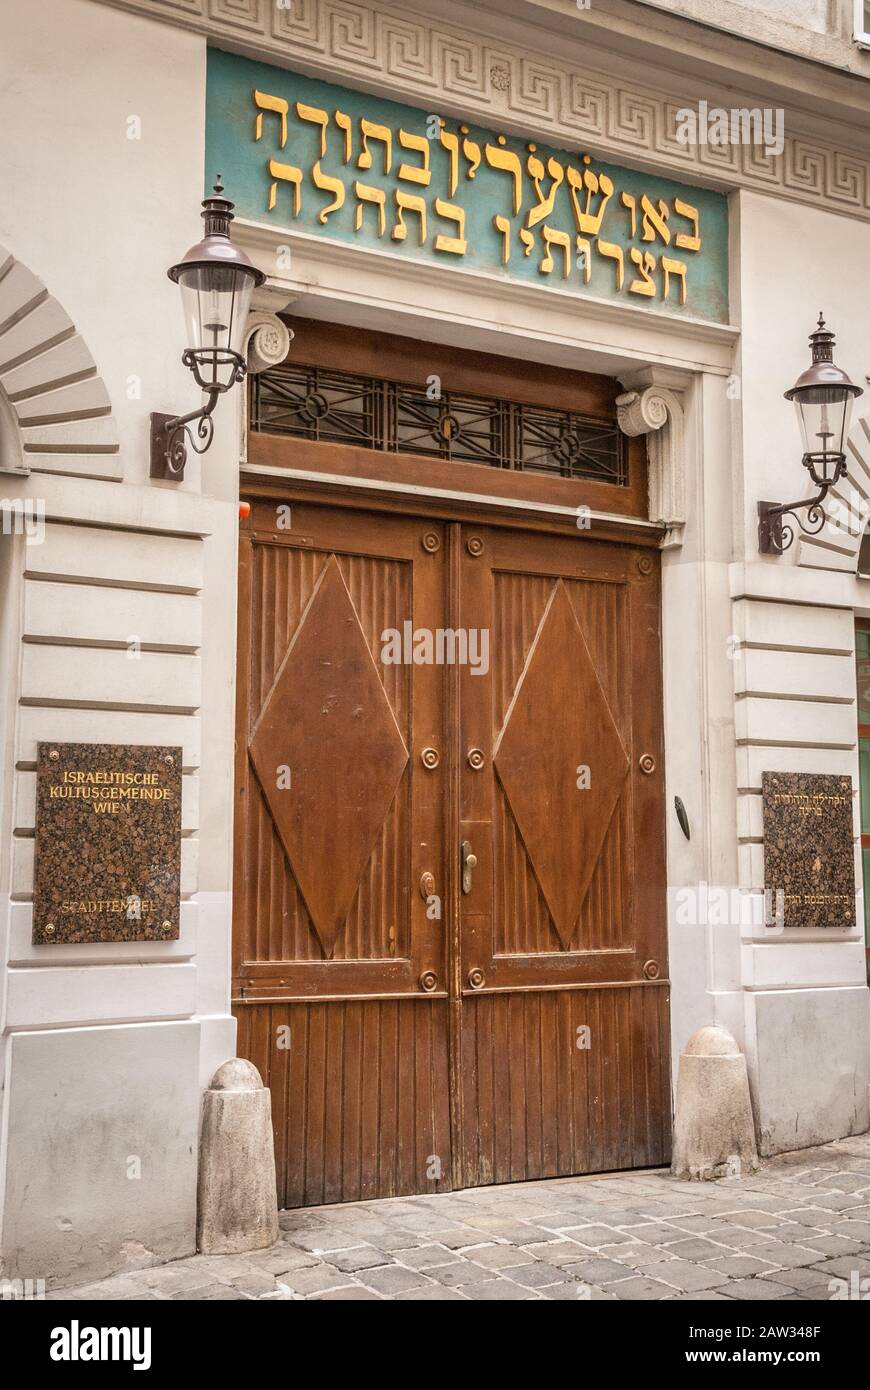 La porte principale de la synagogue centrale de vienne (Stadttempel Wien) Banque D'Images